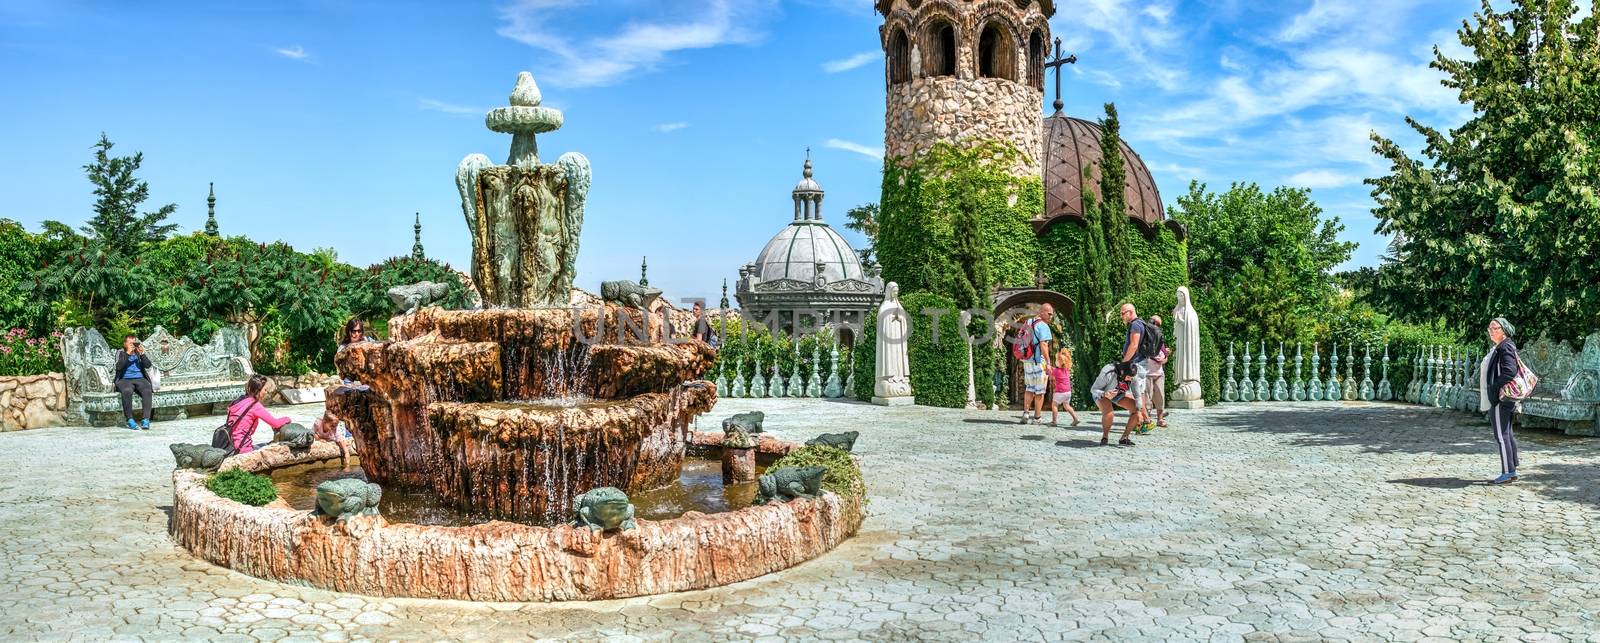 Big Fountain in the castle of Ravadinovo, Bulgaria by Multipedia